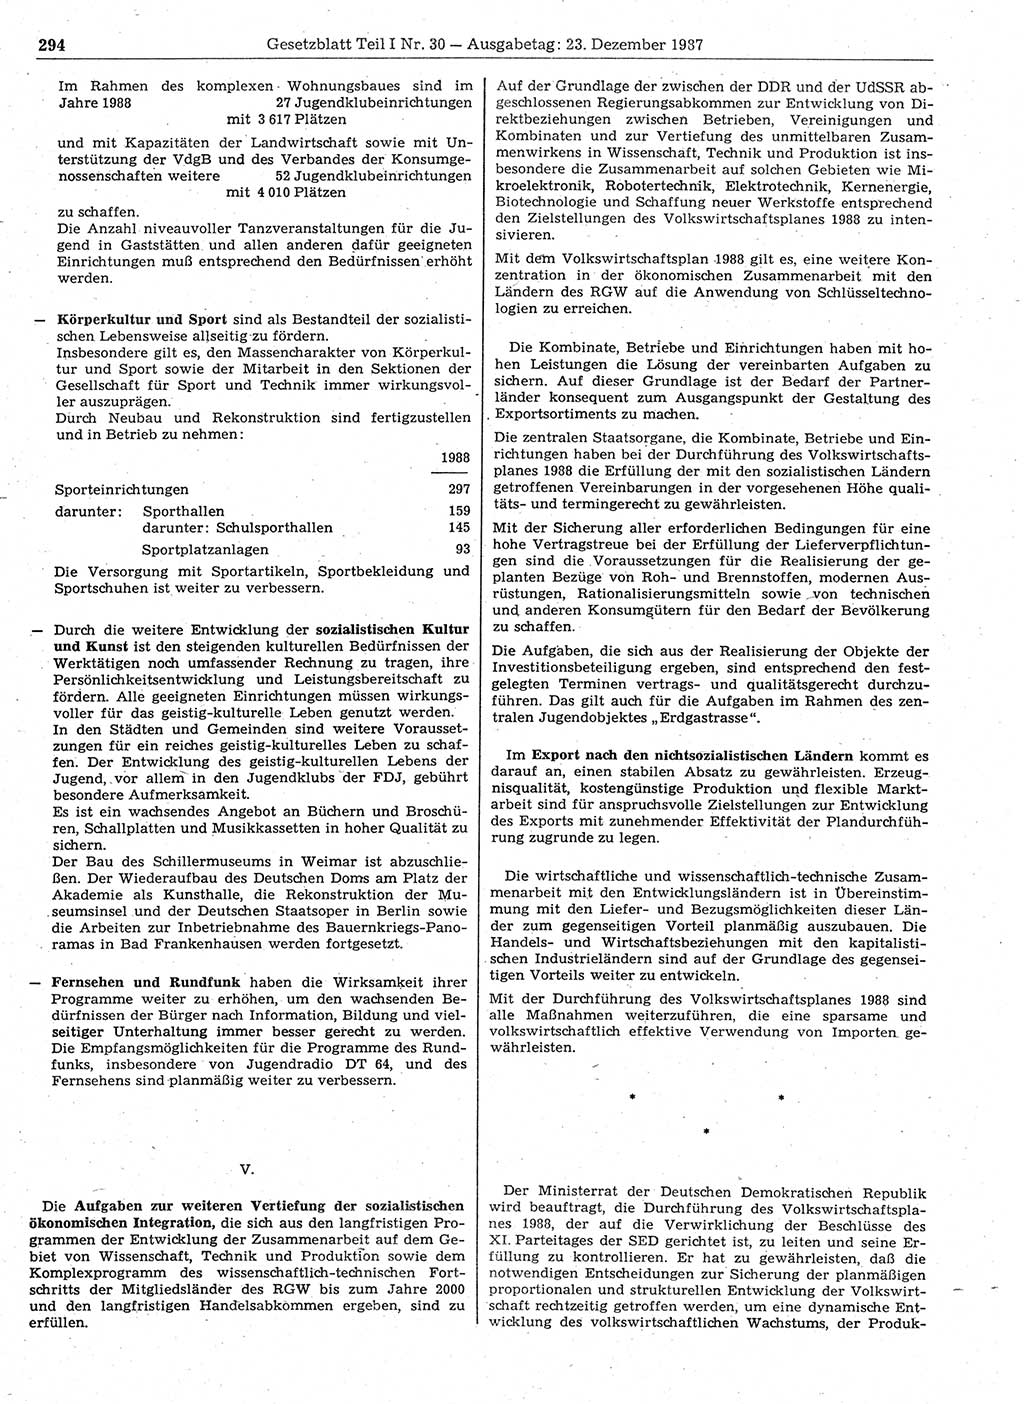 Gesetzblatt (GBl.) der Deutschen Demokratischen Republik (DDR) Teil Ⅰ 1987, Seite 294 (GBl. DDR Ⅰ 1987, S. 294)